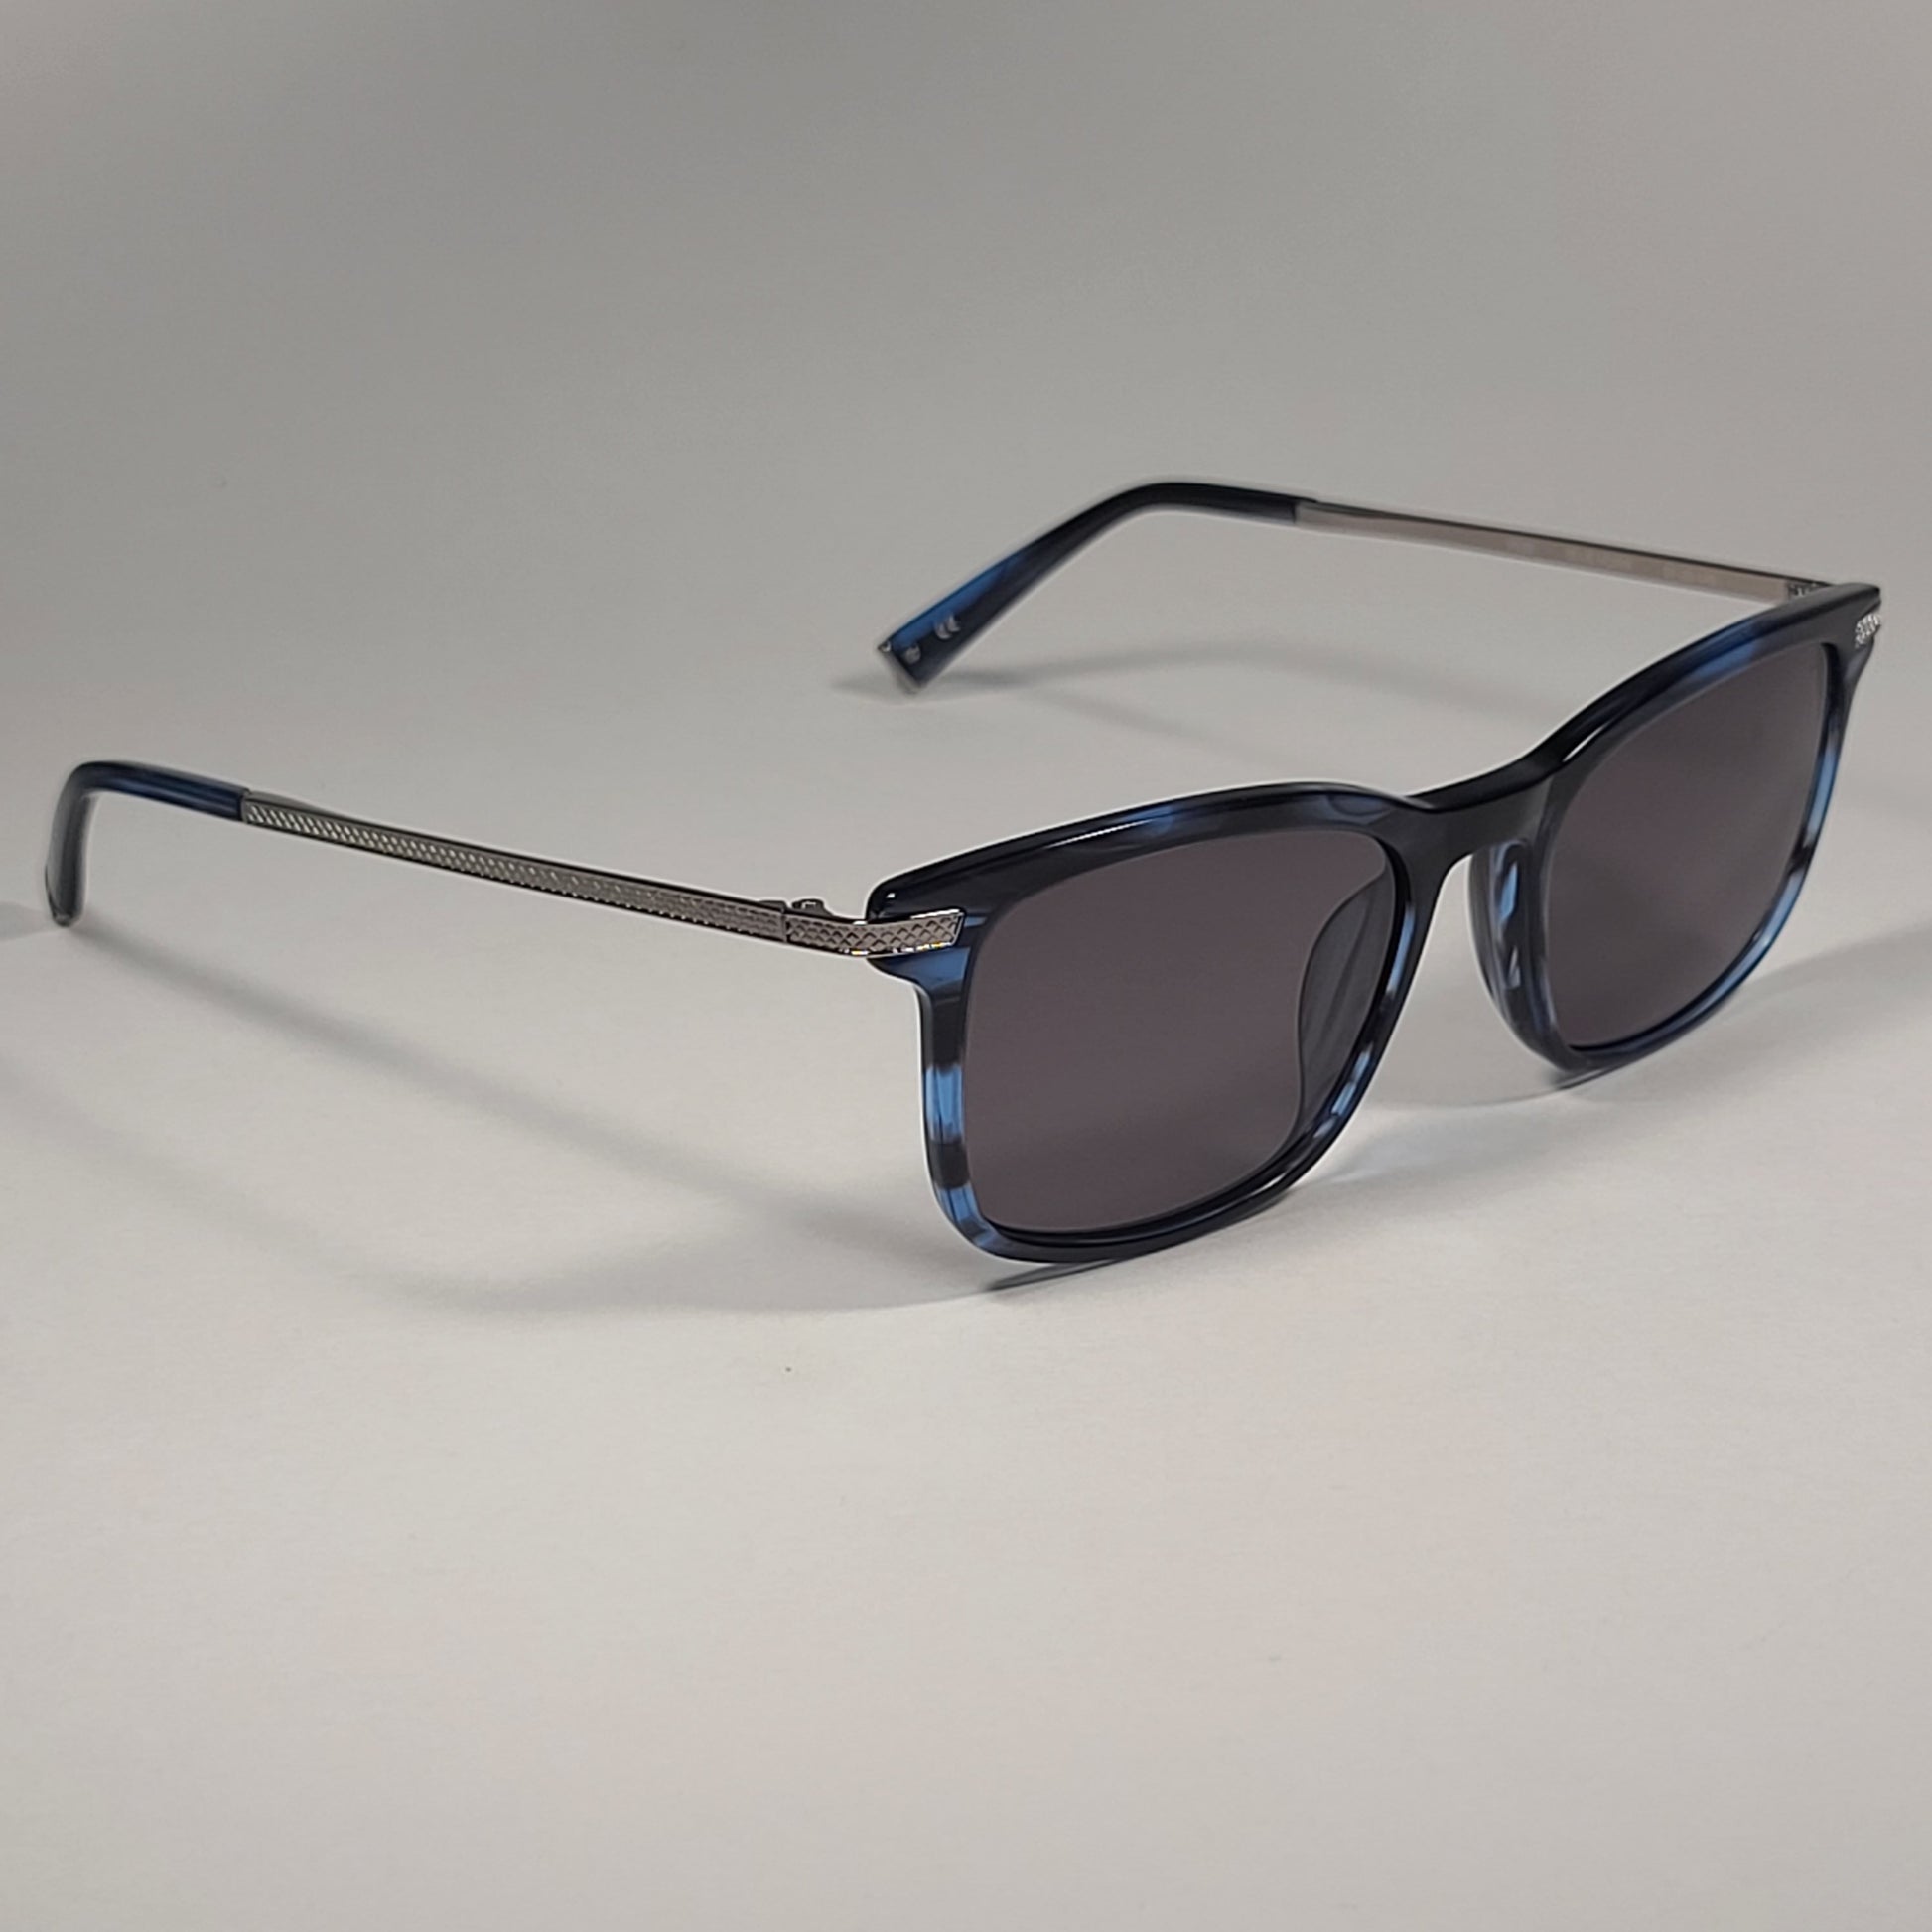 John Varvatos Men’s Square Sunglasses JV V539 Blue Horn Frame / Gray Lens - Sunglasses